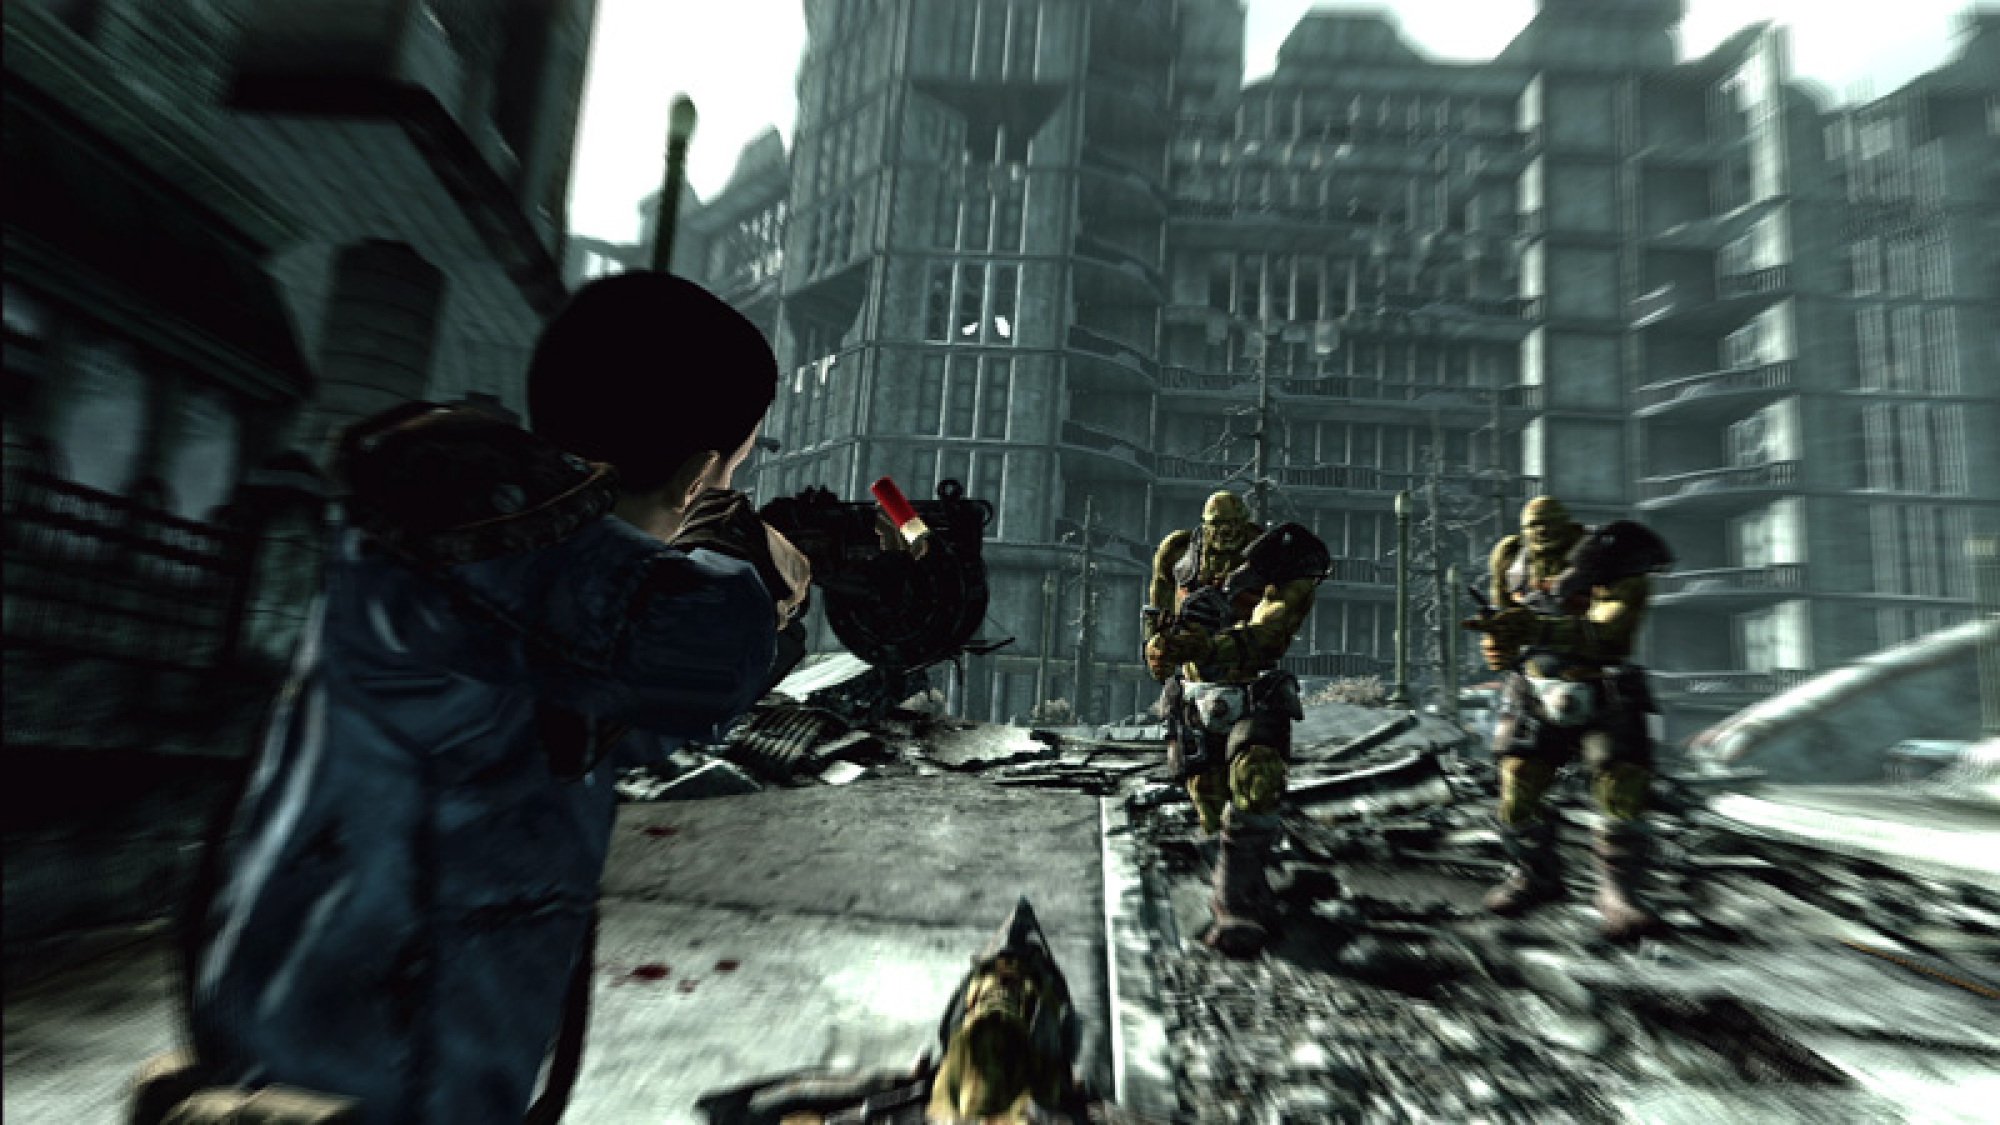 Une personne vêtue d'une veste bleue pointant une arme sur des personnages blindés dans un environnement urbain désolé, avec des décombres et une créature morte au sol.